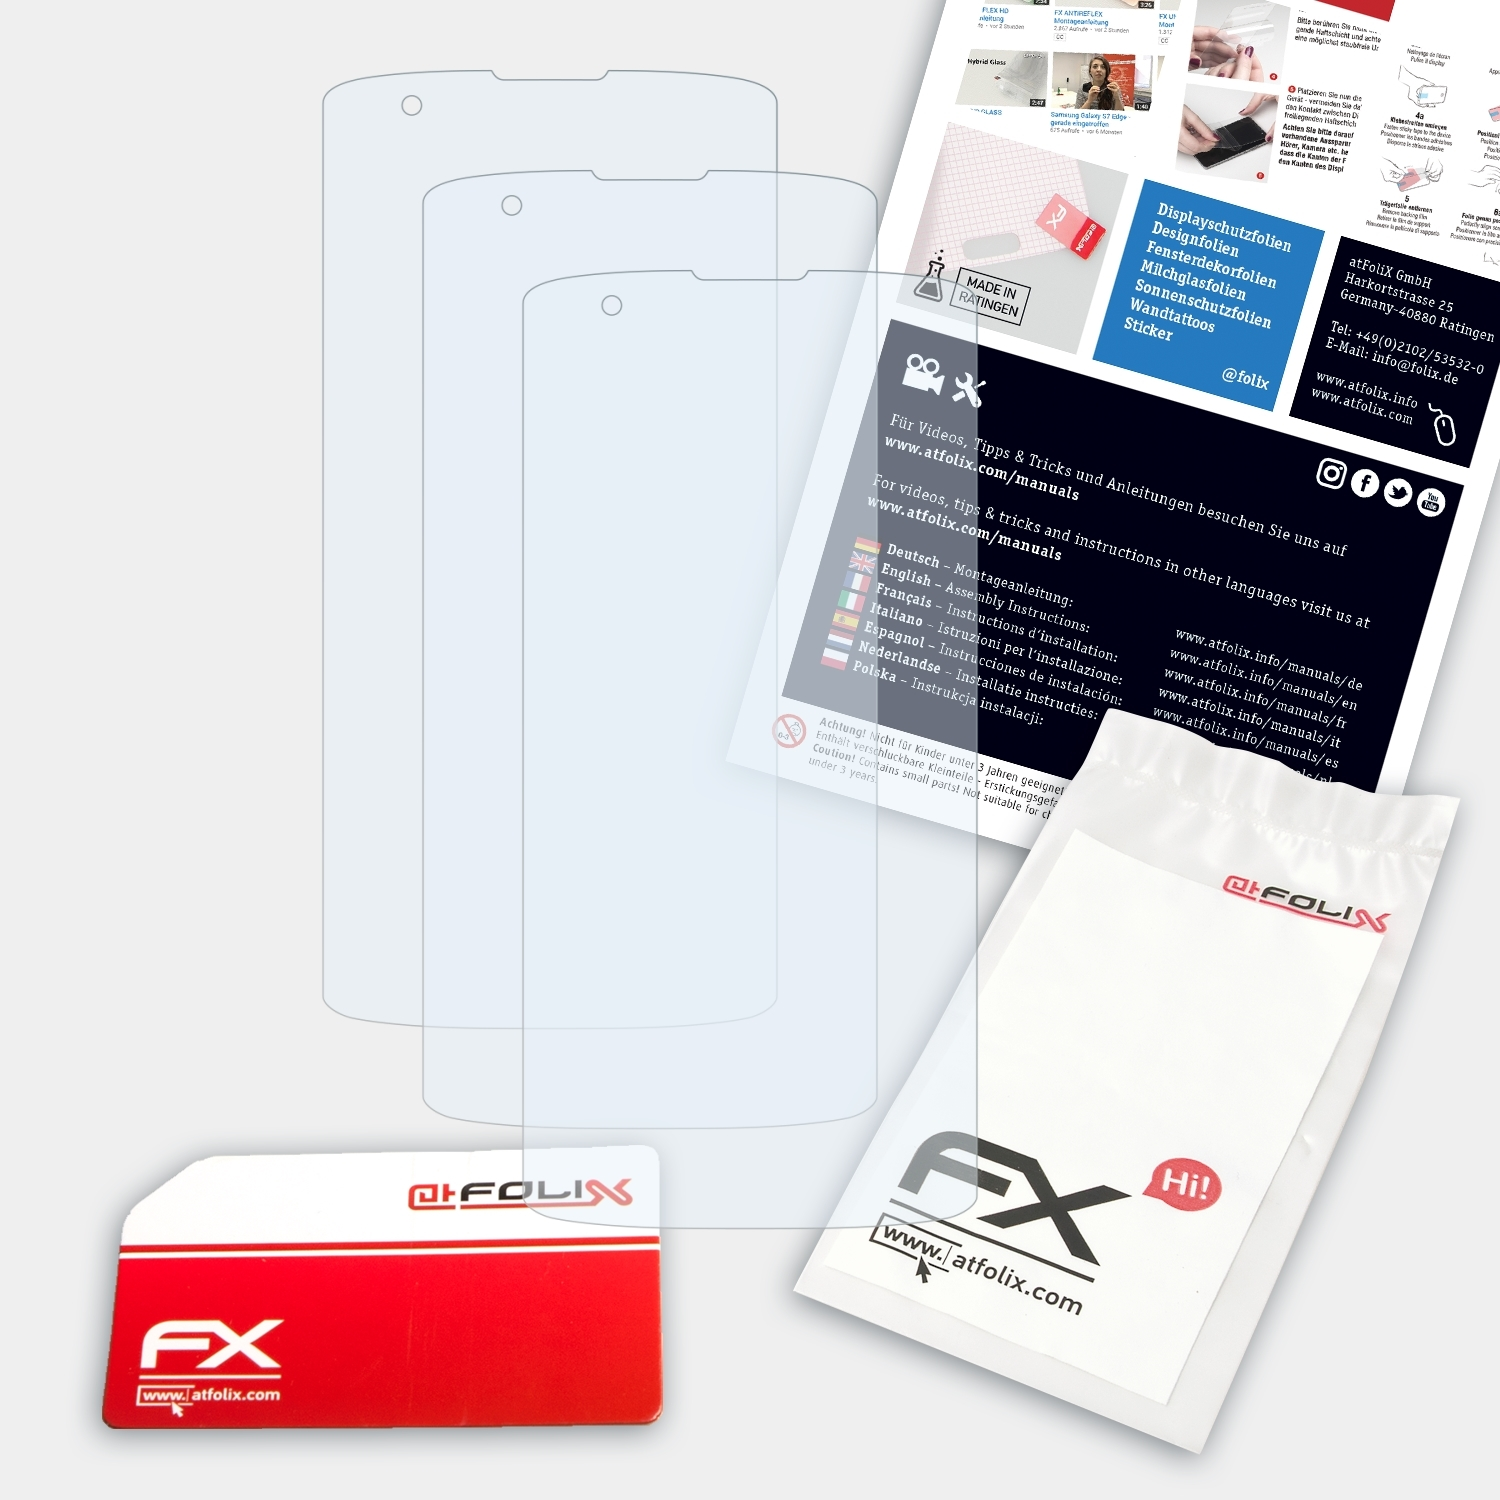 3x LG ATFOLIX FX-Clear Displayschutz(für K8)